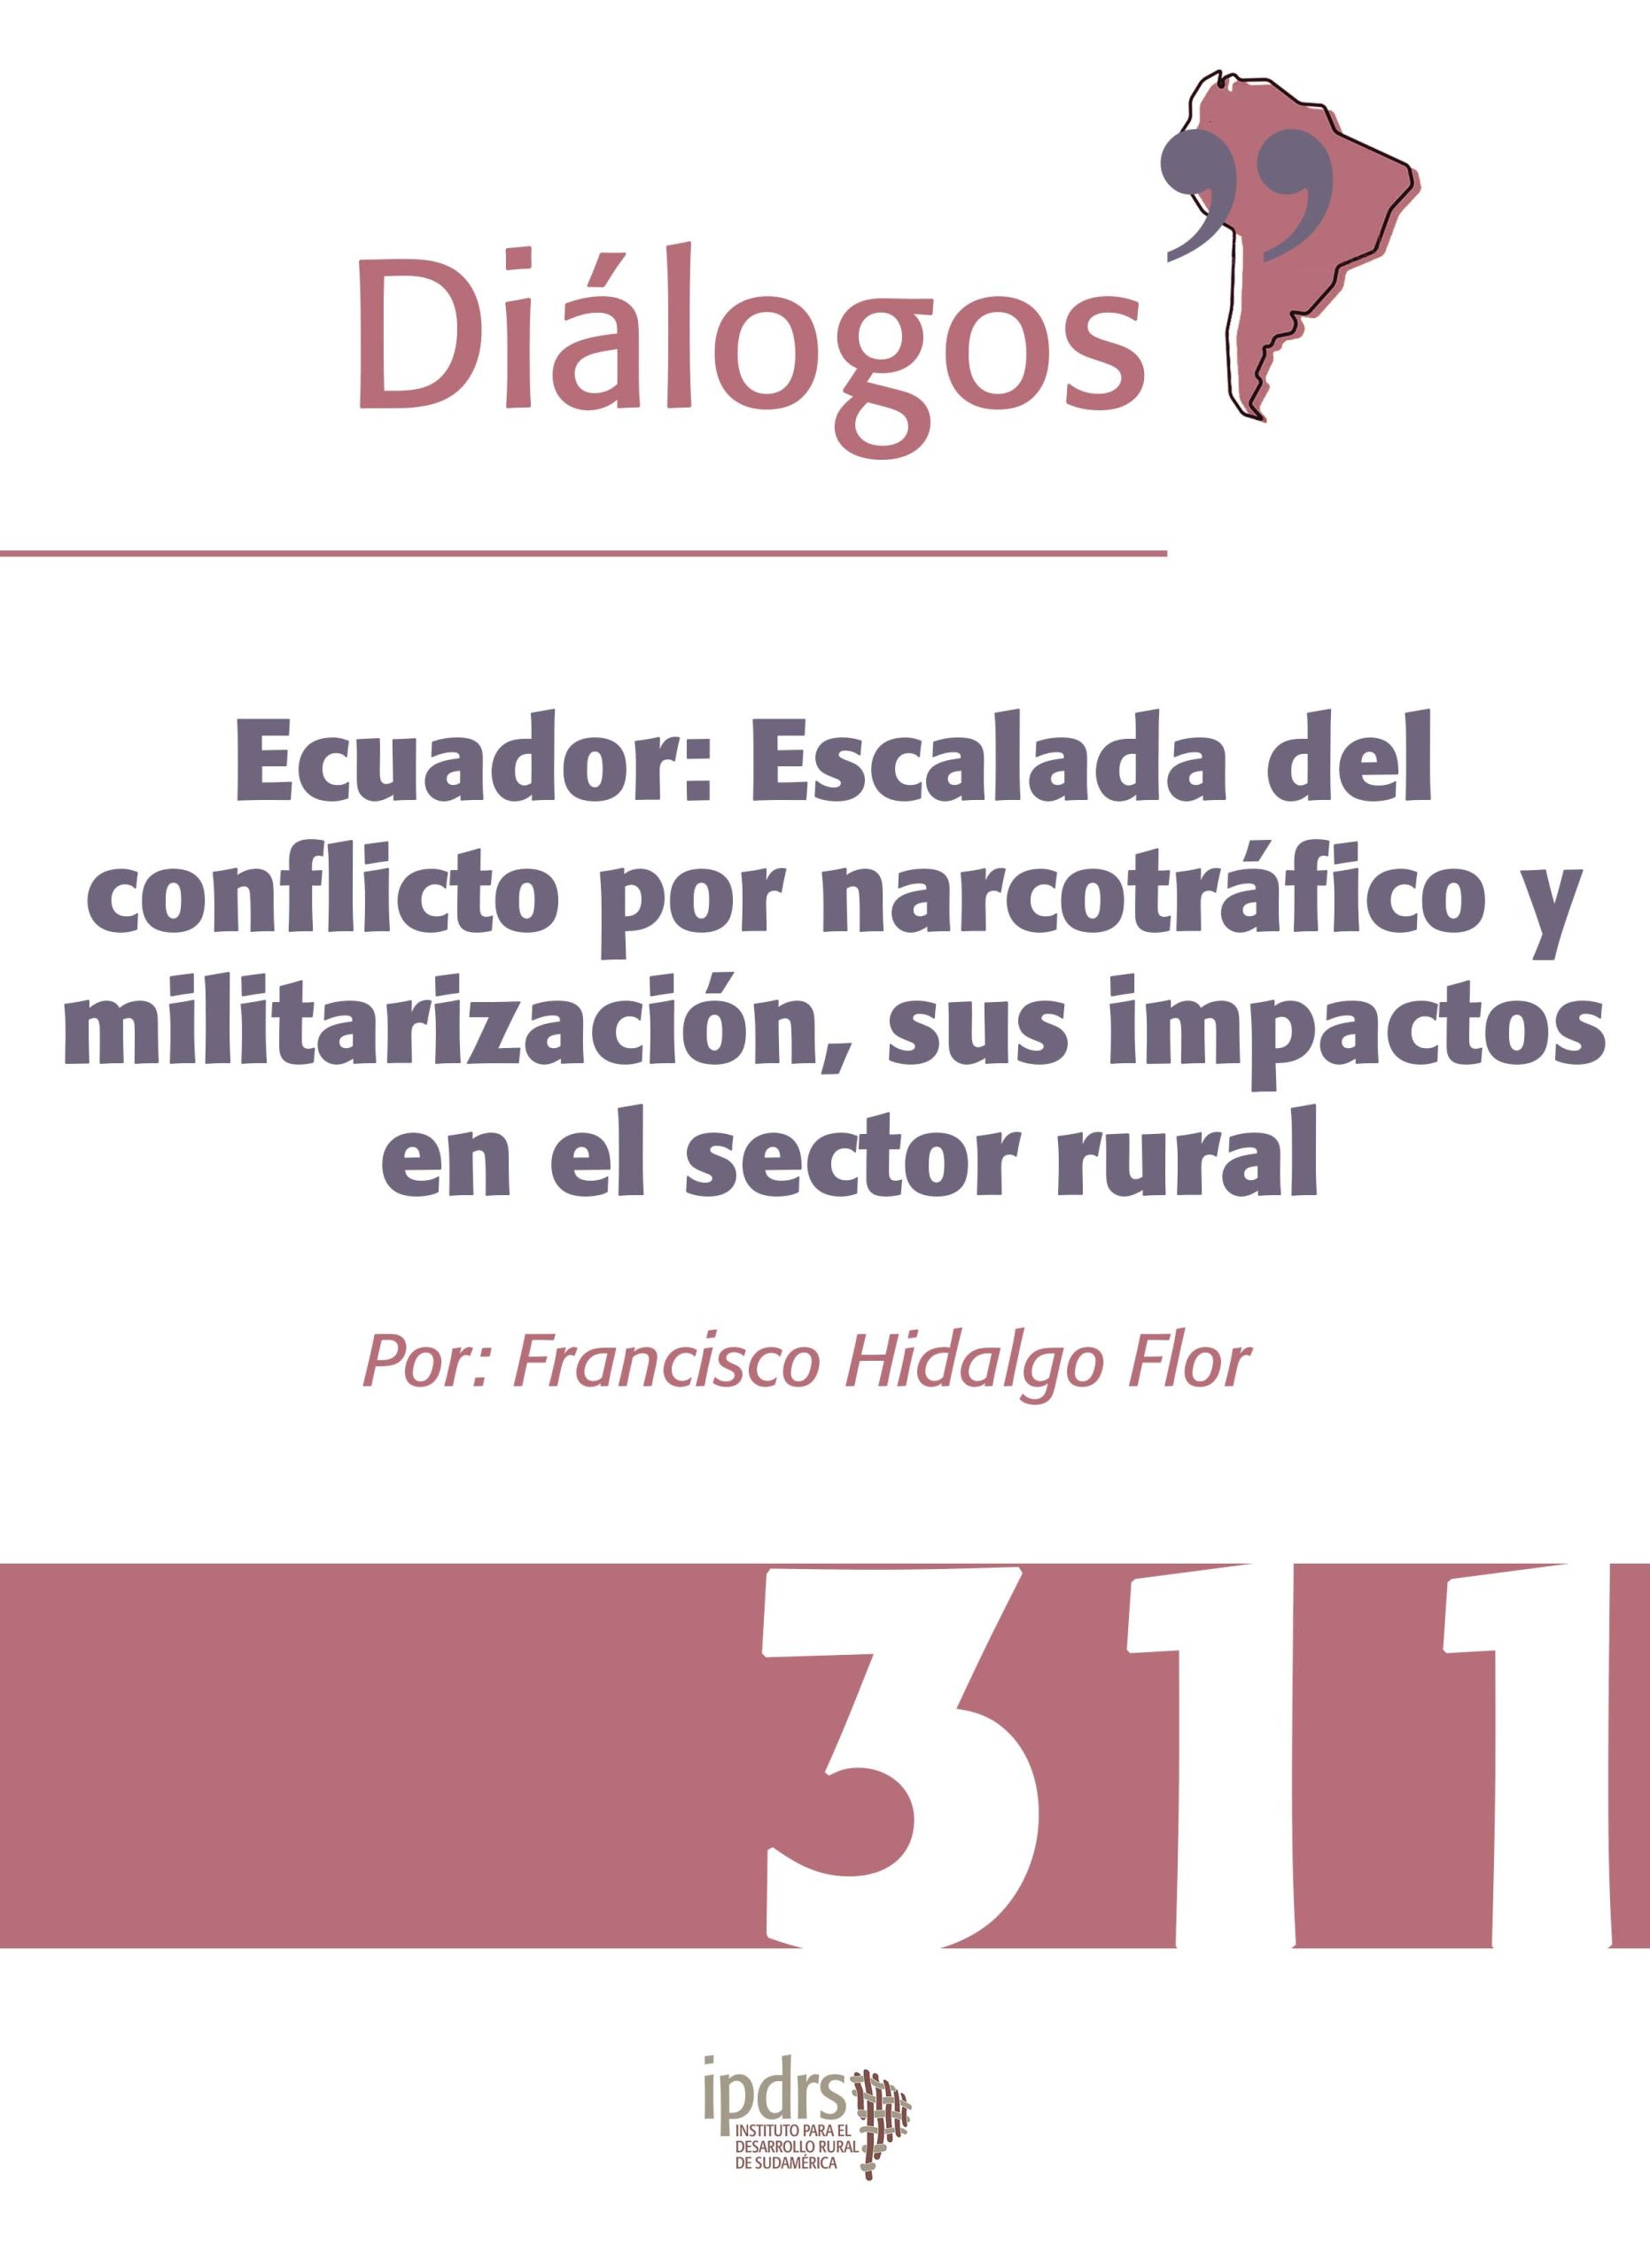 Ecuador: Escalada del conflicto por narcotráfico y militarización, sus impactos en el sector rural